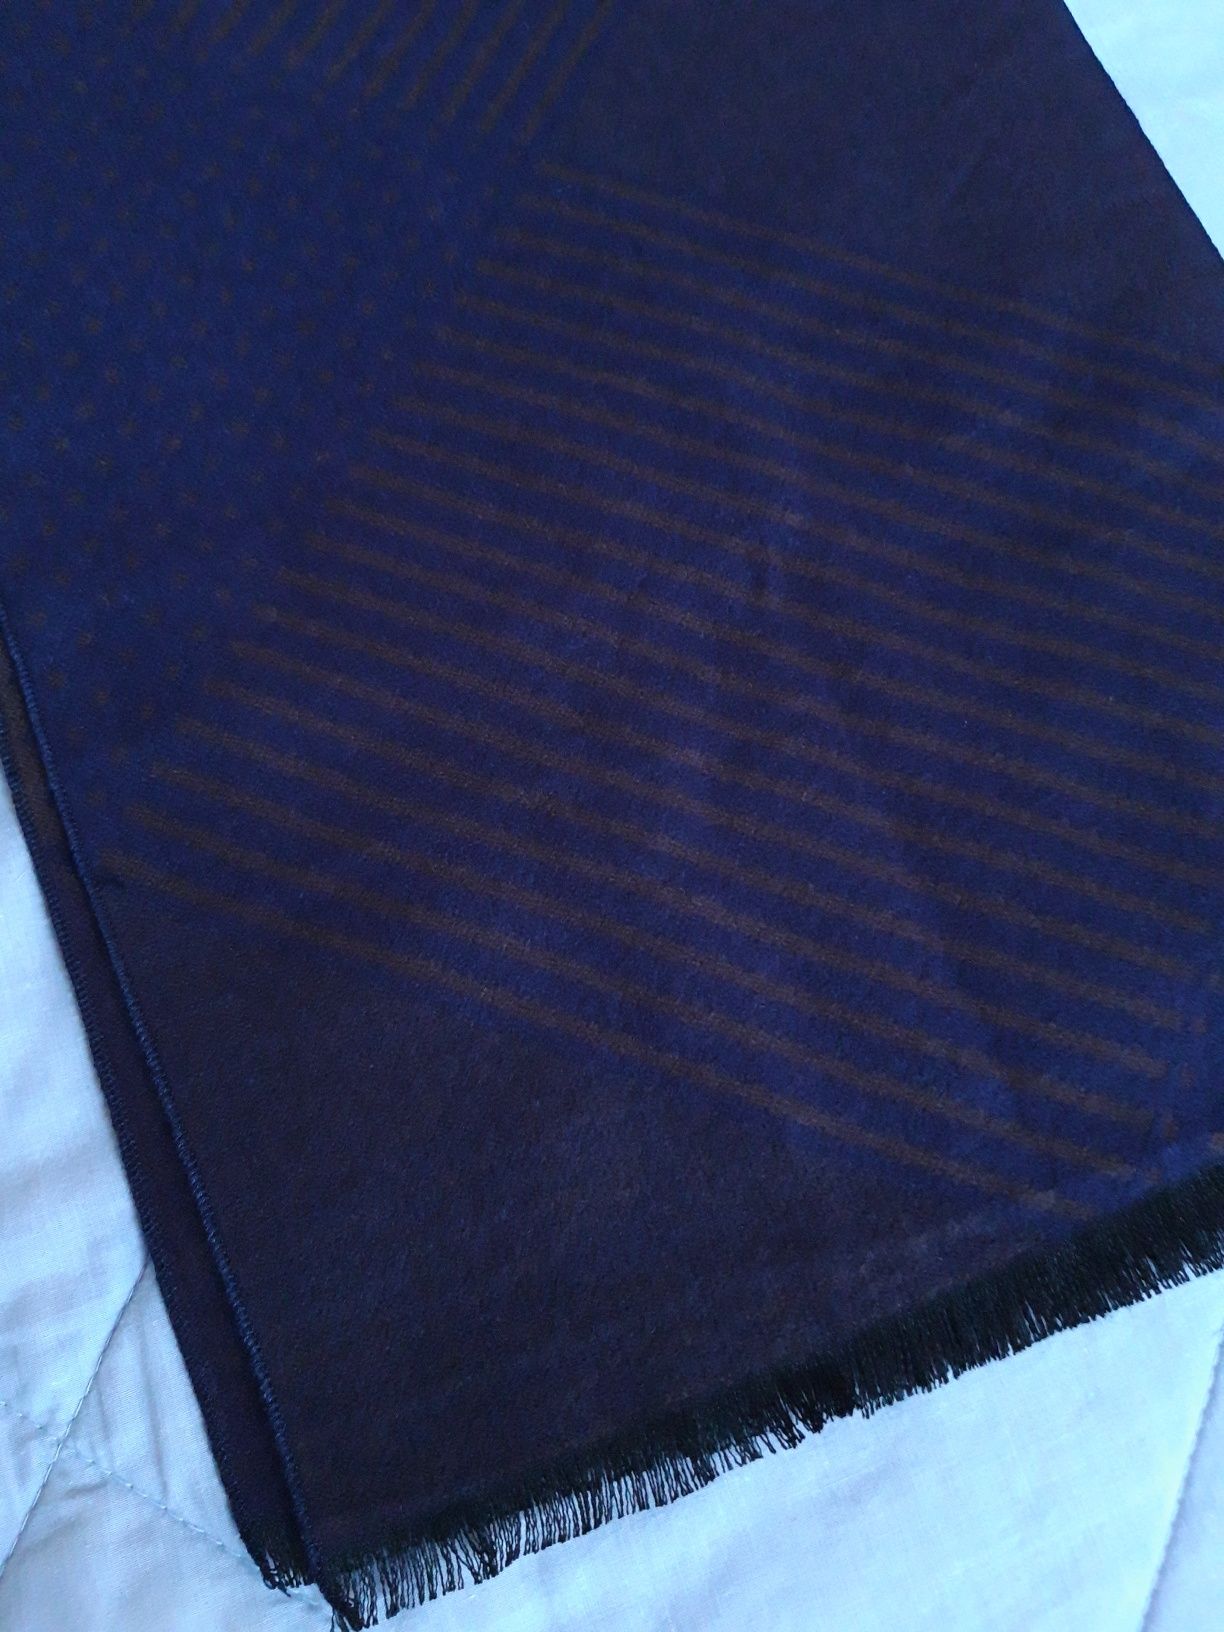 Cachecol masculino azul escuro c/ padrões geométricos (lã e seda) NOVO  Bonfim • OLX Portugal